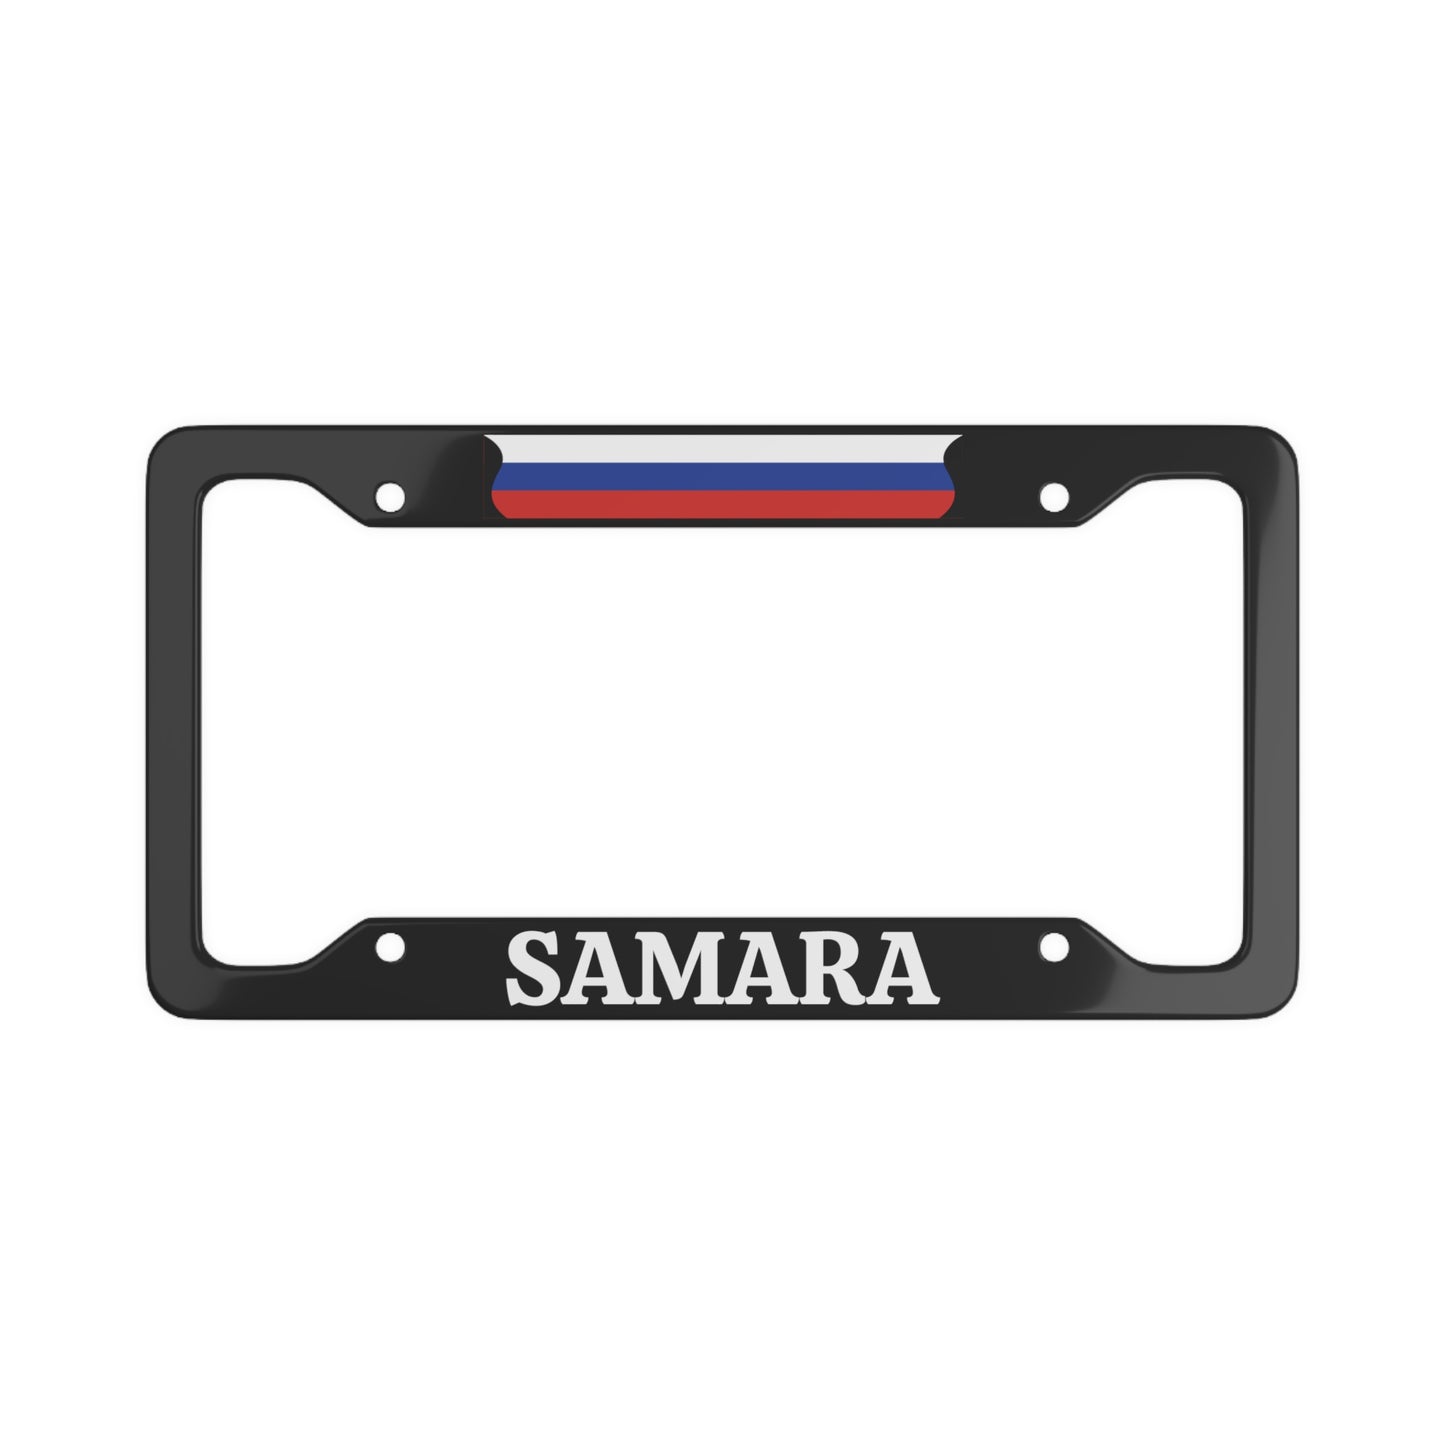 Samara License Plate Frame